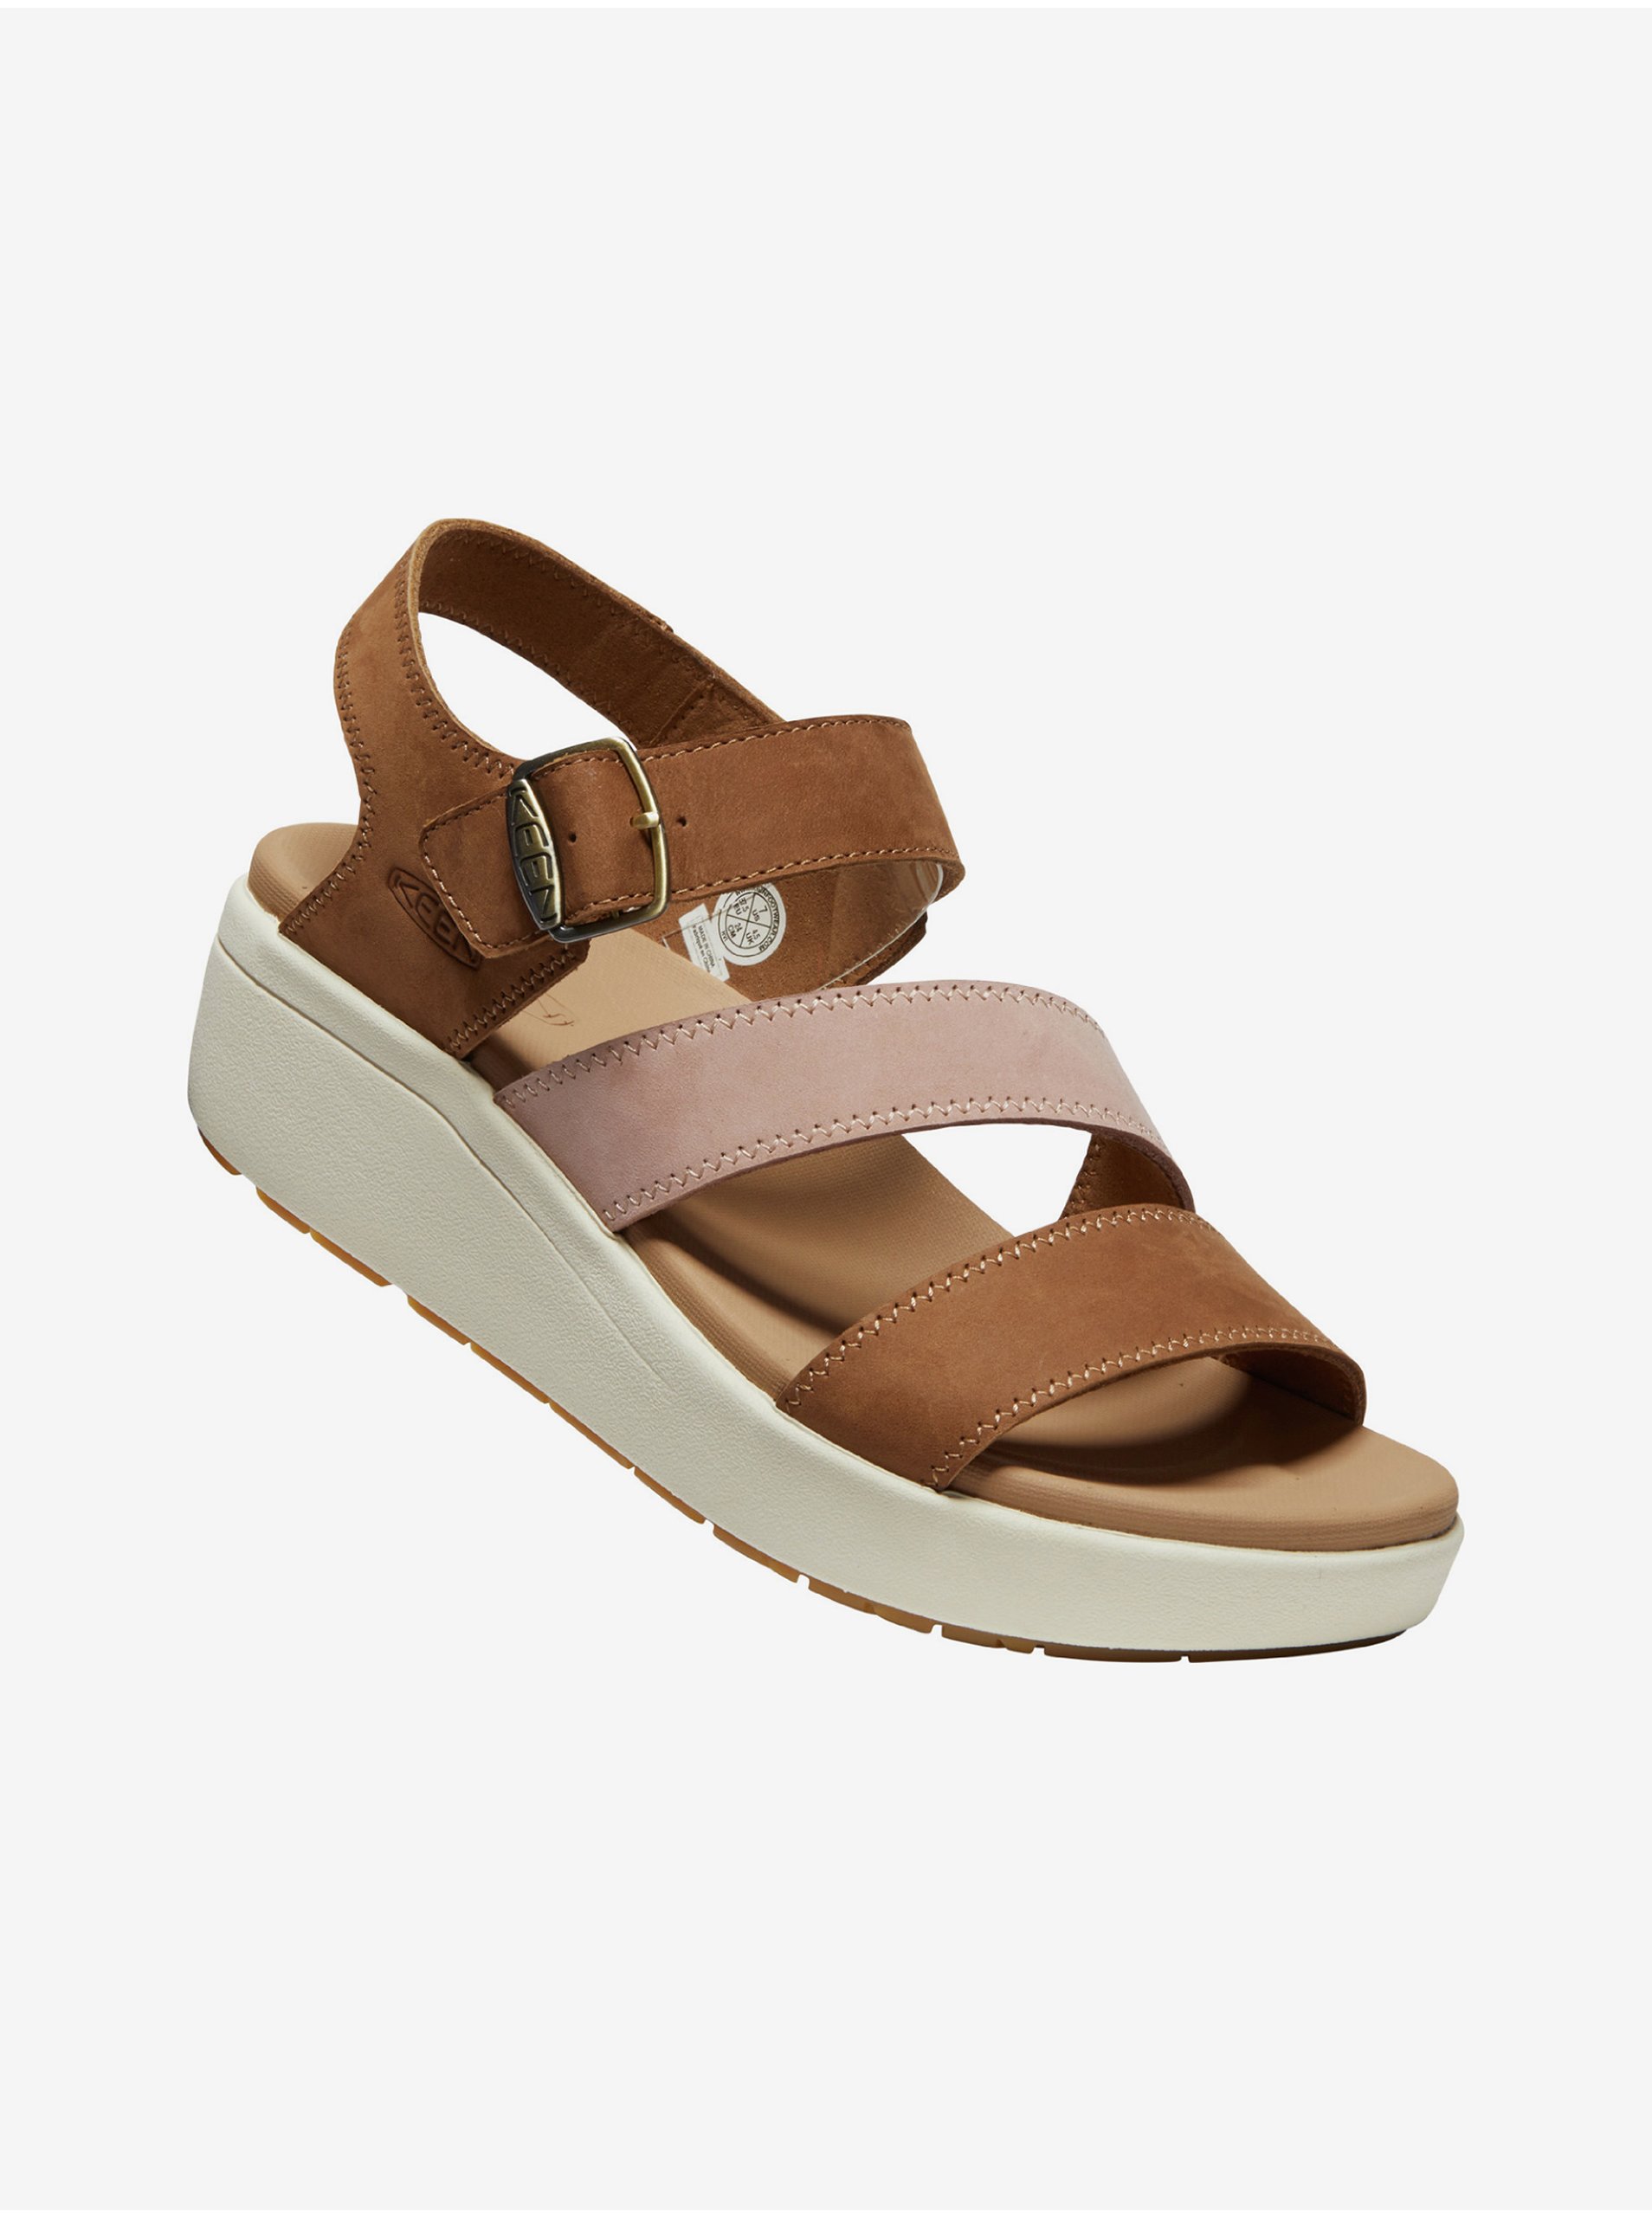 E-shop Tmavě hnědé dámské kožené sandály na klínku Keen